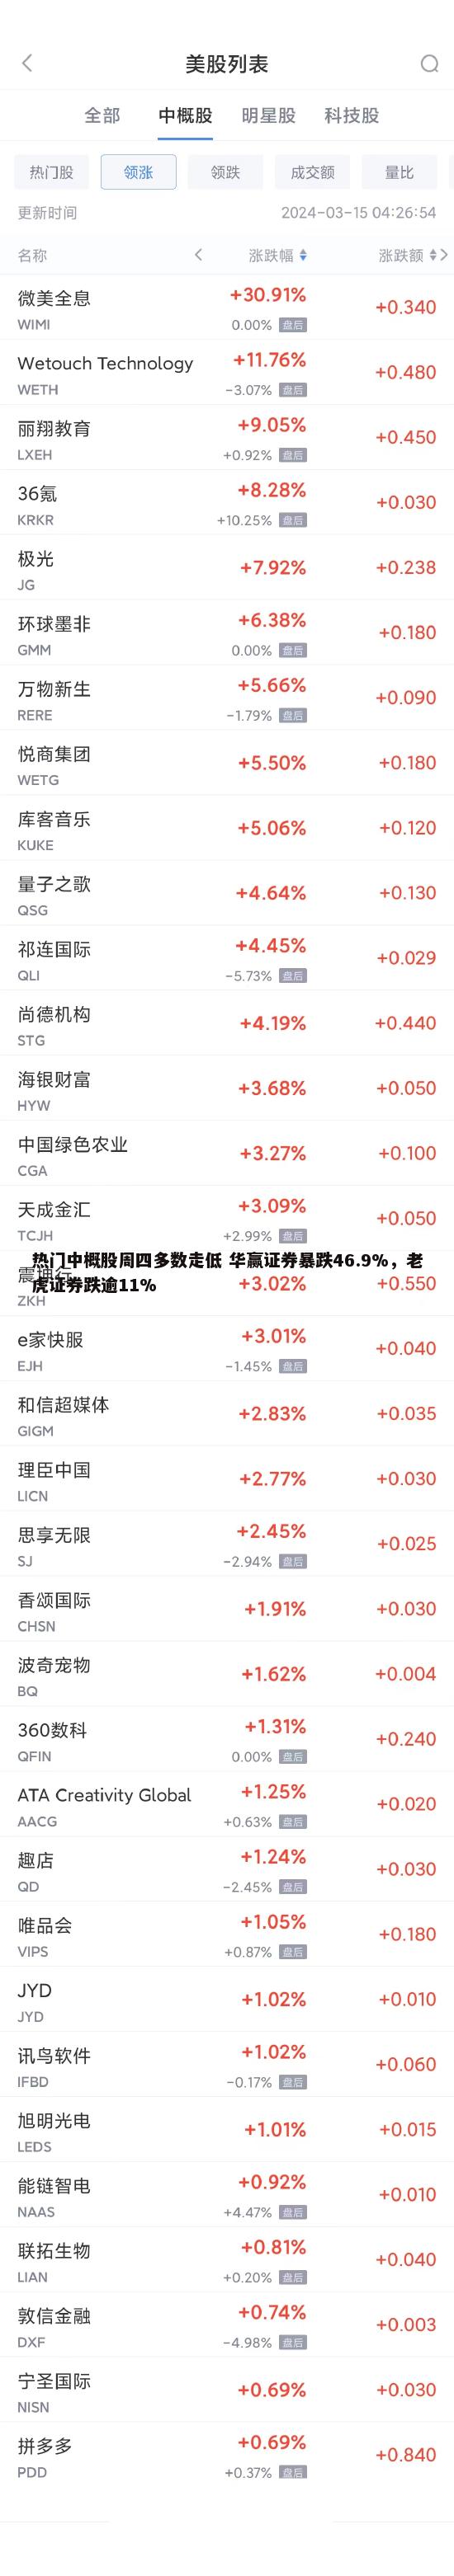 热门中概股周四多数走低 华赢证券暴跌46.9%，老虎证券跌逾11%